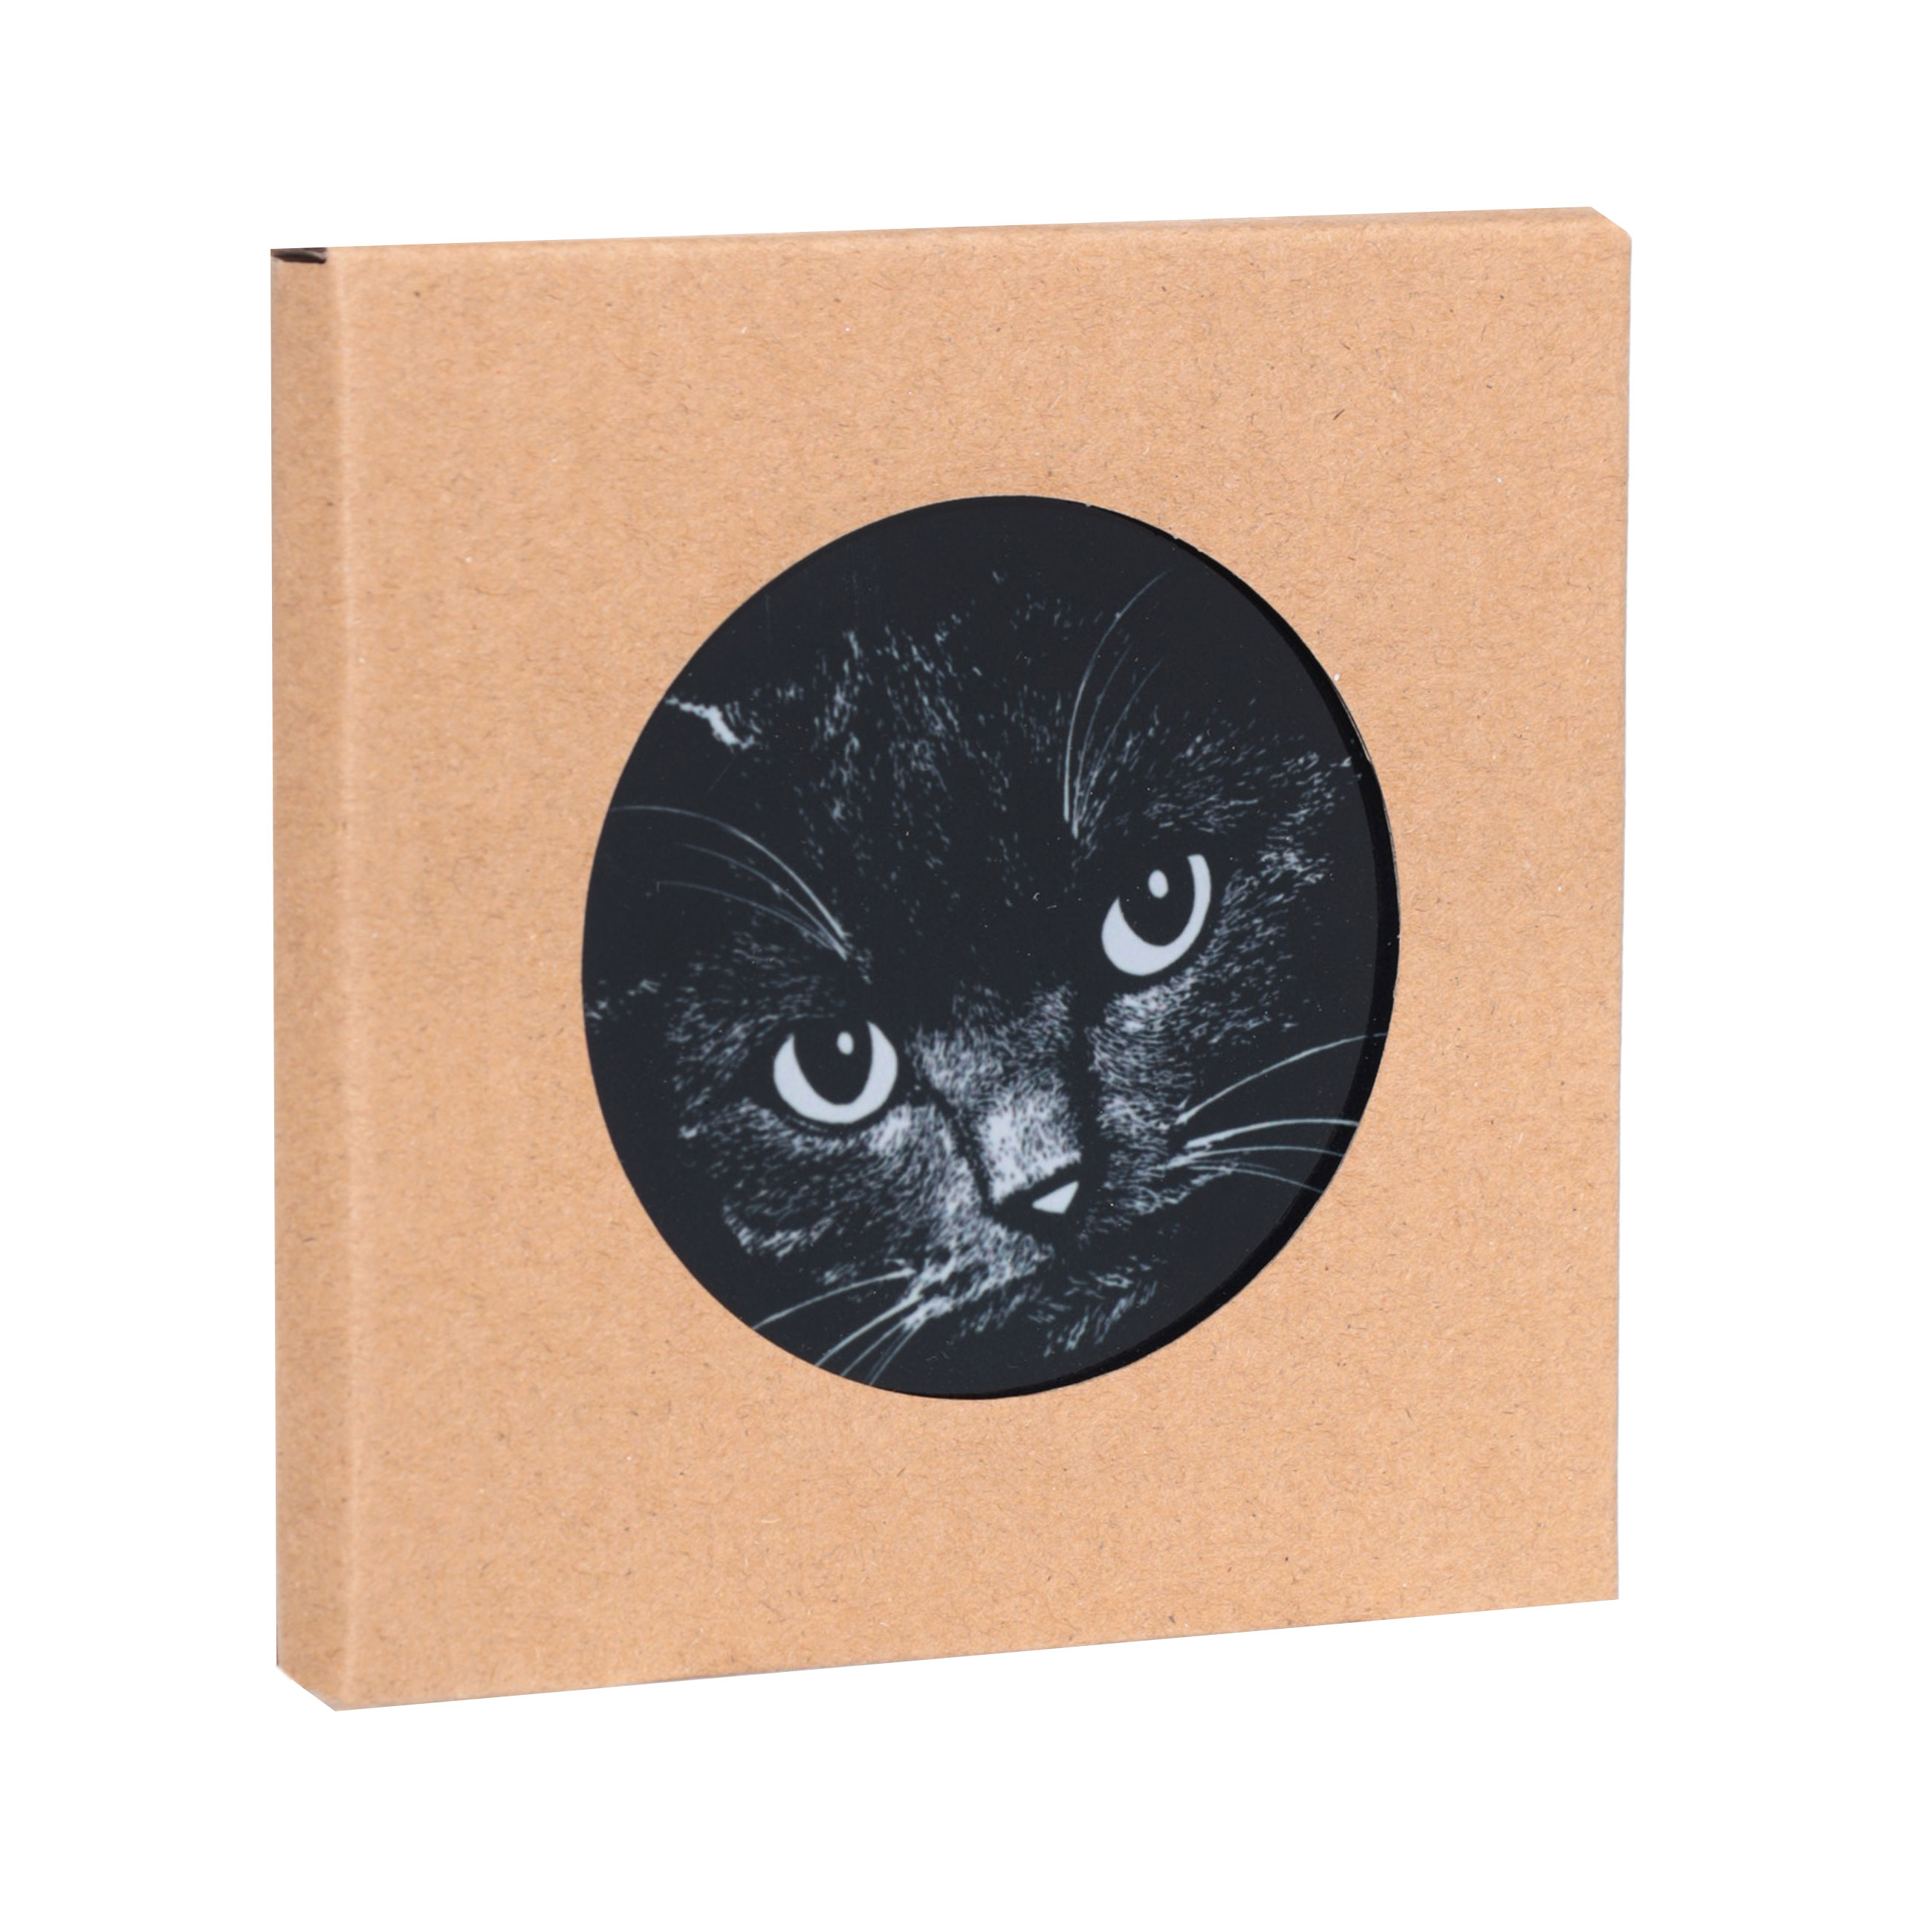 Подставка под кружку, 11x11 см, керамика/пробка, круглая, черная, Ночной кот, Cat night изображение № 3